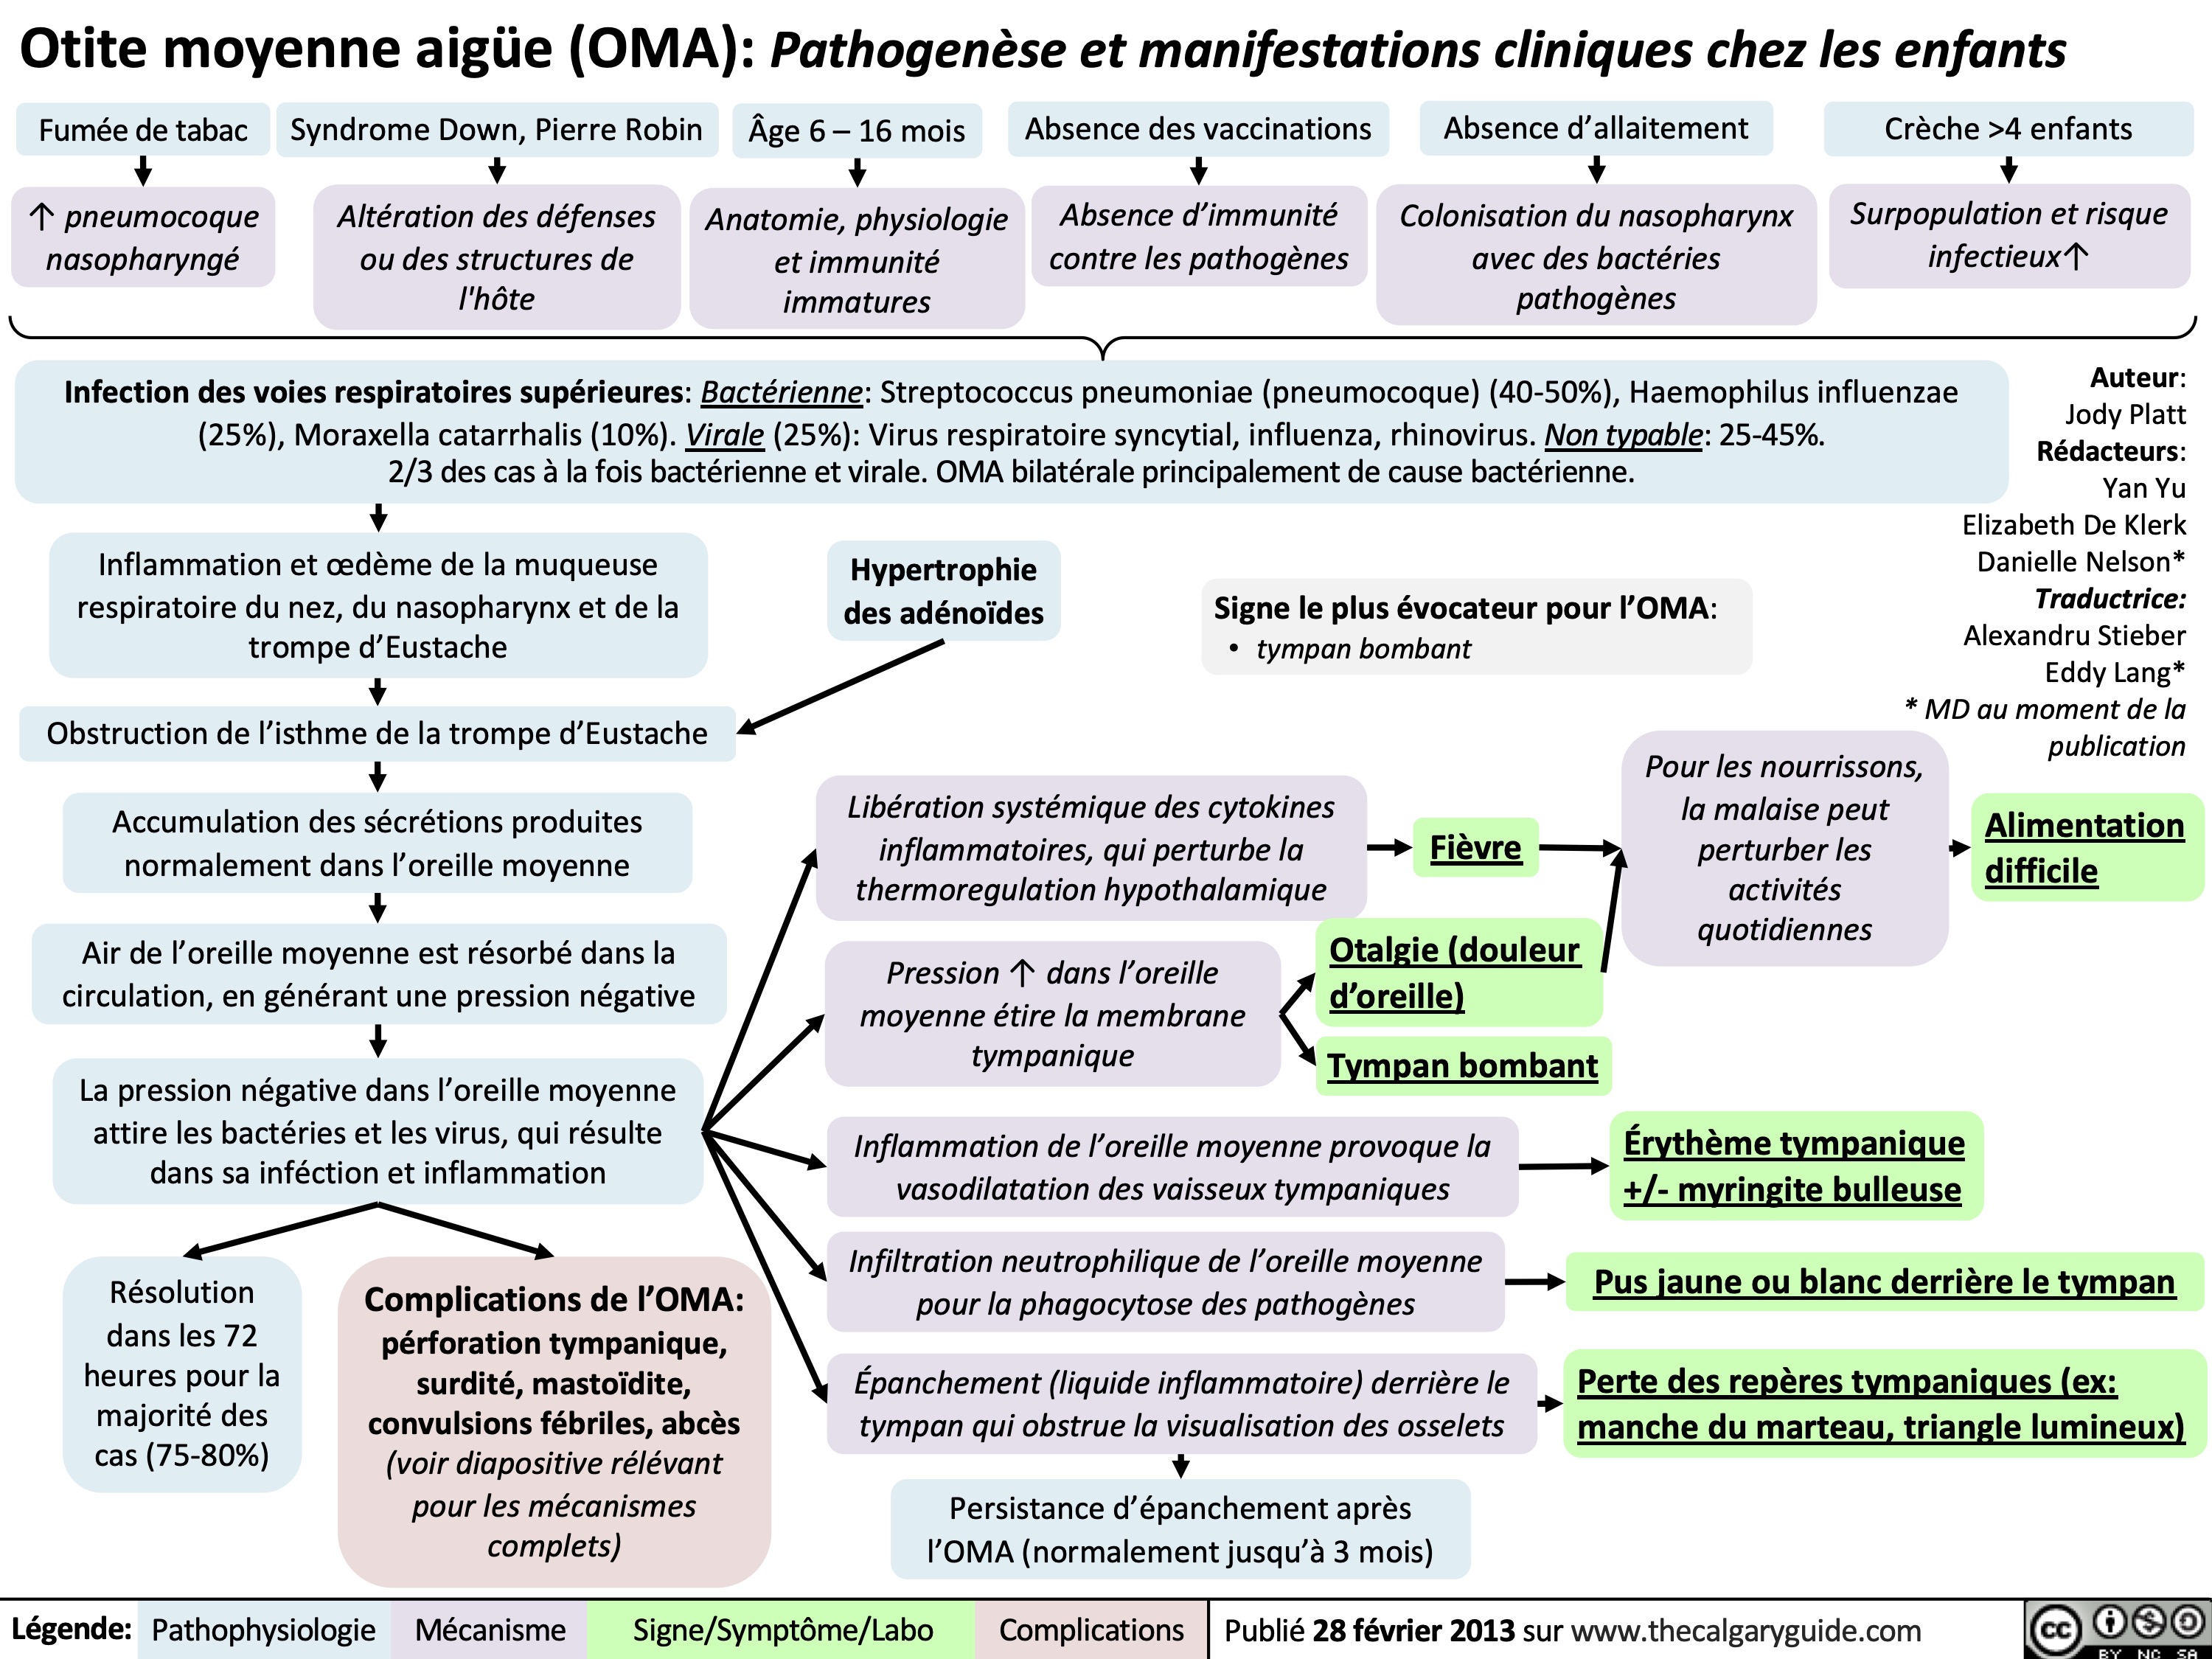 Otite moyenne aigüe (OMA) Pathogenèse et manifestations cliniques chez les enfants